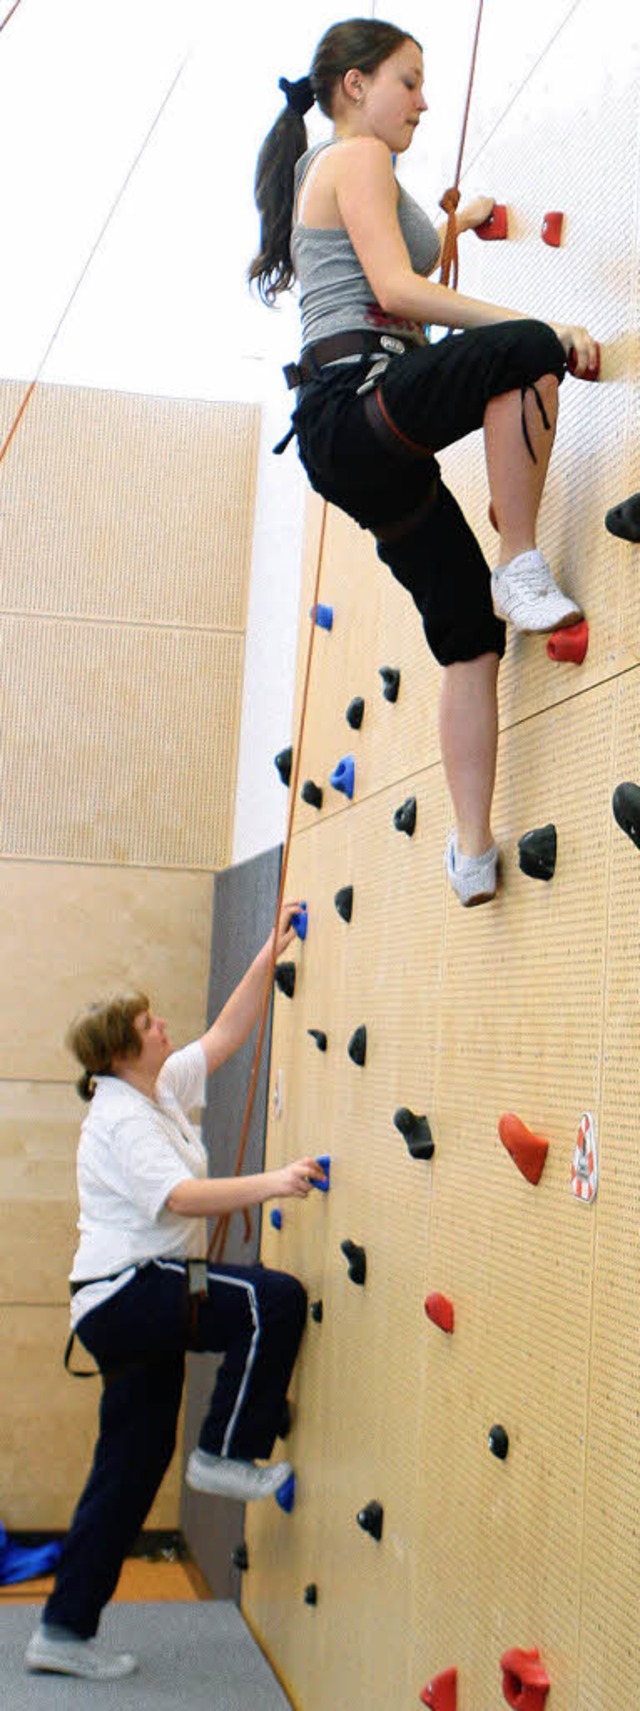 Mut, Selbstvertrauen, Teamarbeit und Technik  sind an der Kletterwand gefragt.   | Foto: Gerhard Mller